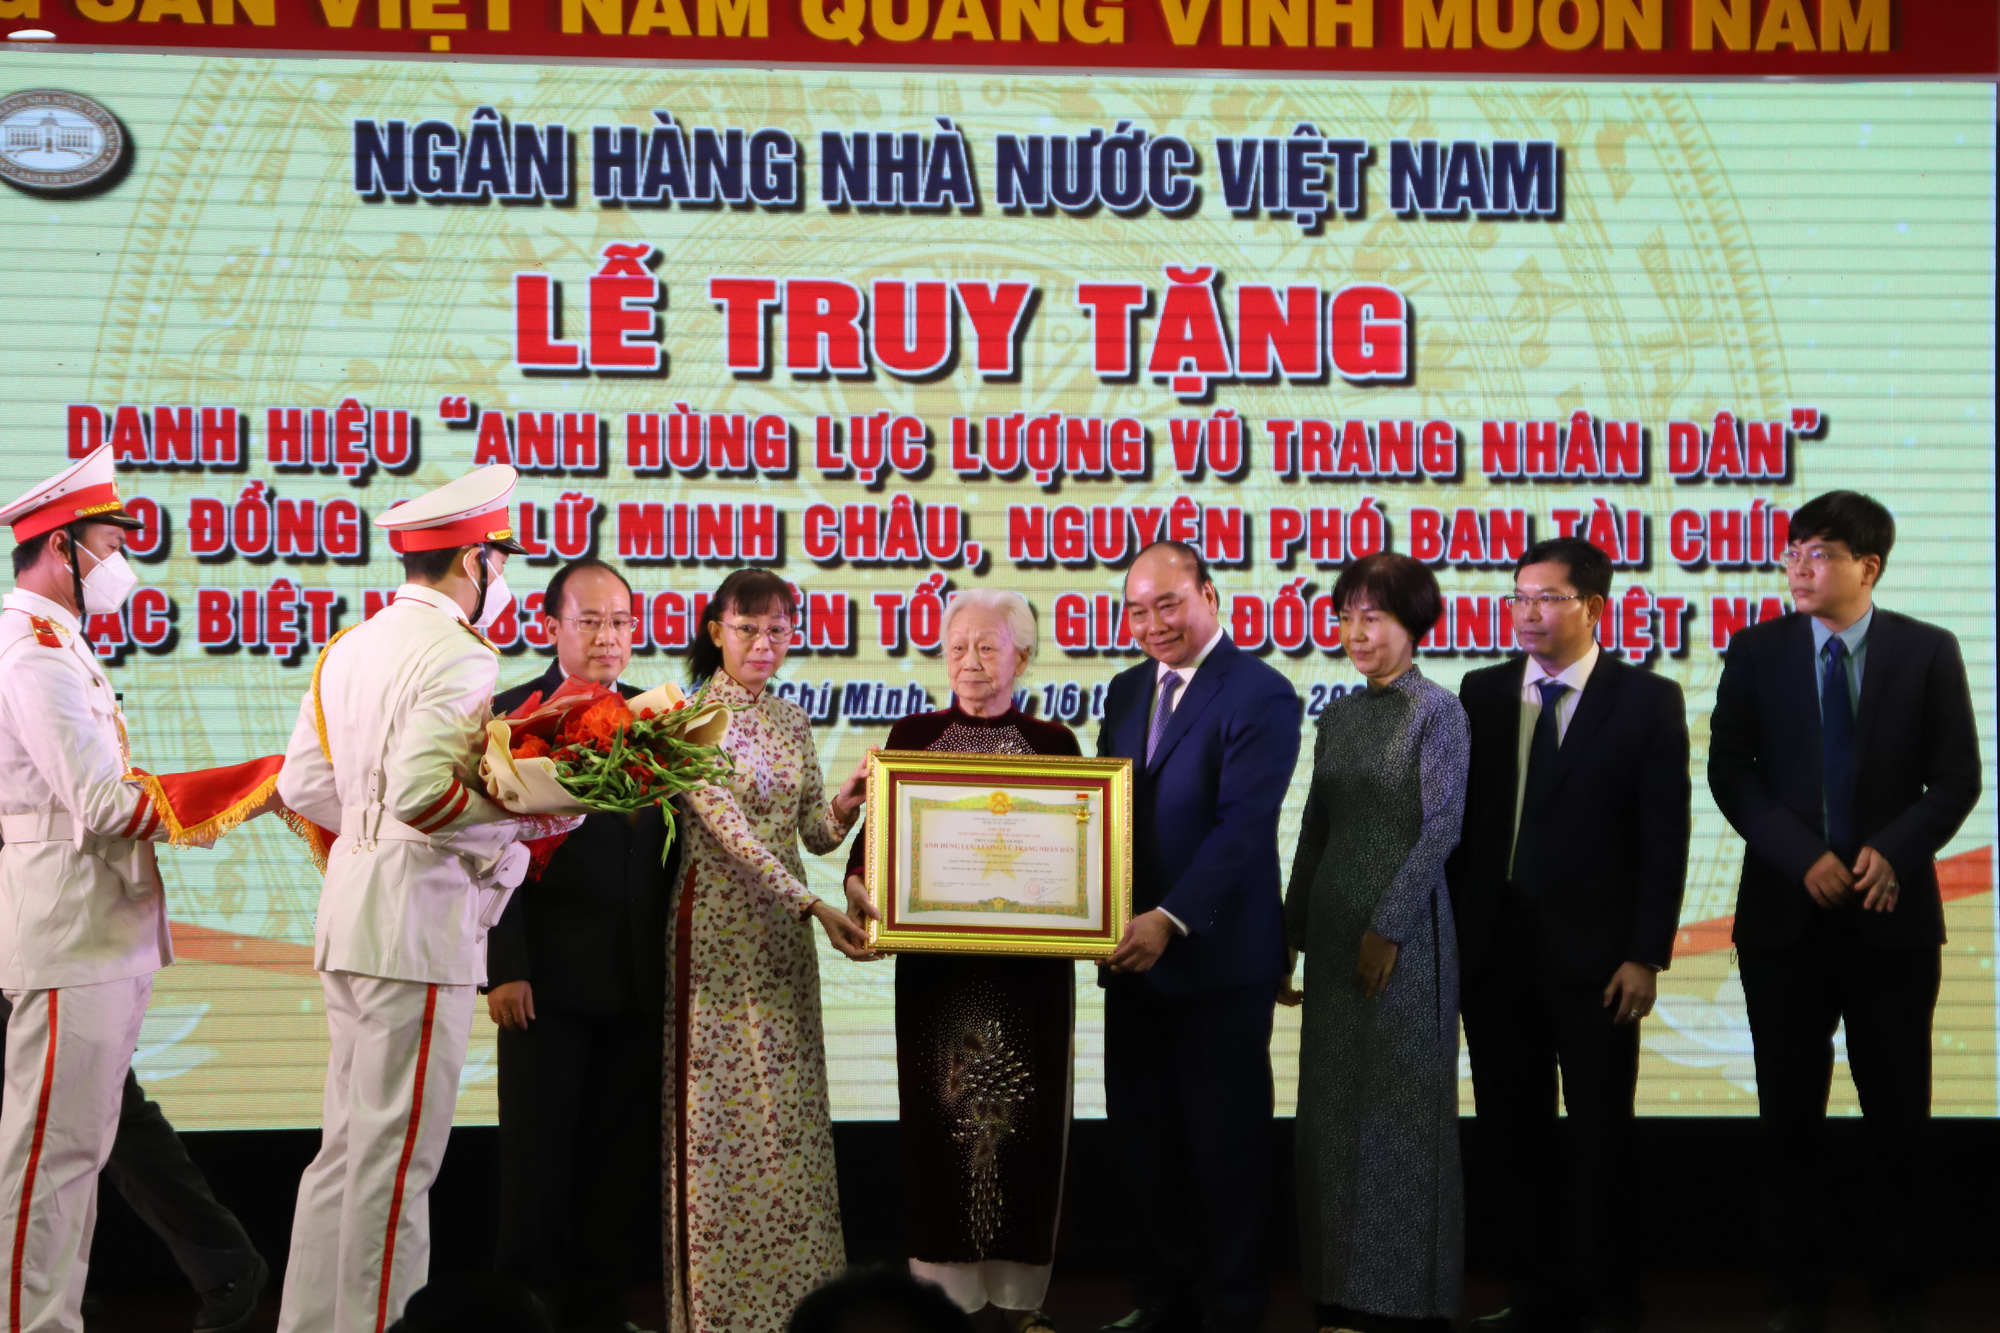 Chủ tịch nước truy tặng danh hiệu Anh hùng Lực lượng vũ trang nhân dân cho ông Lữ Minh Châu - Ảnh 1.